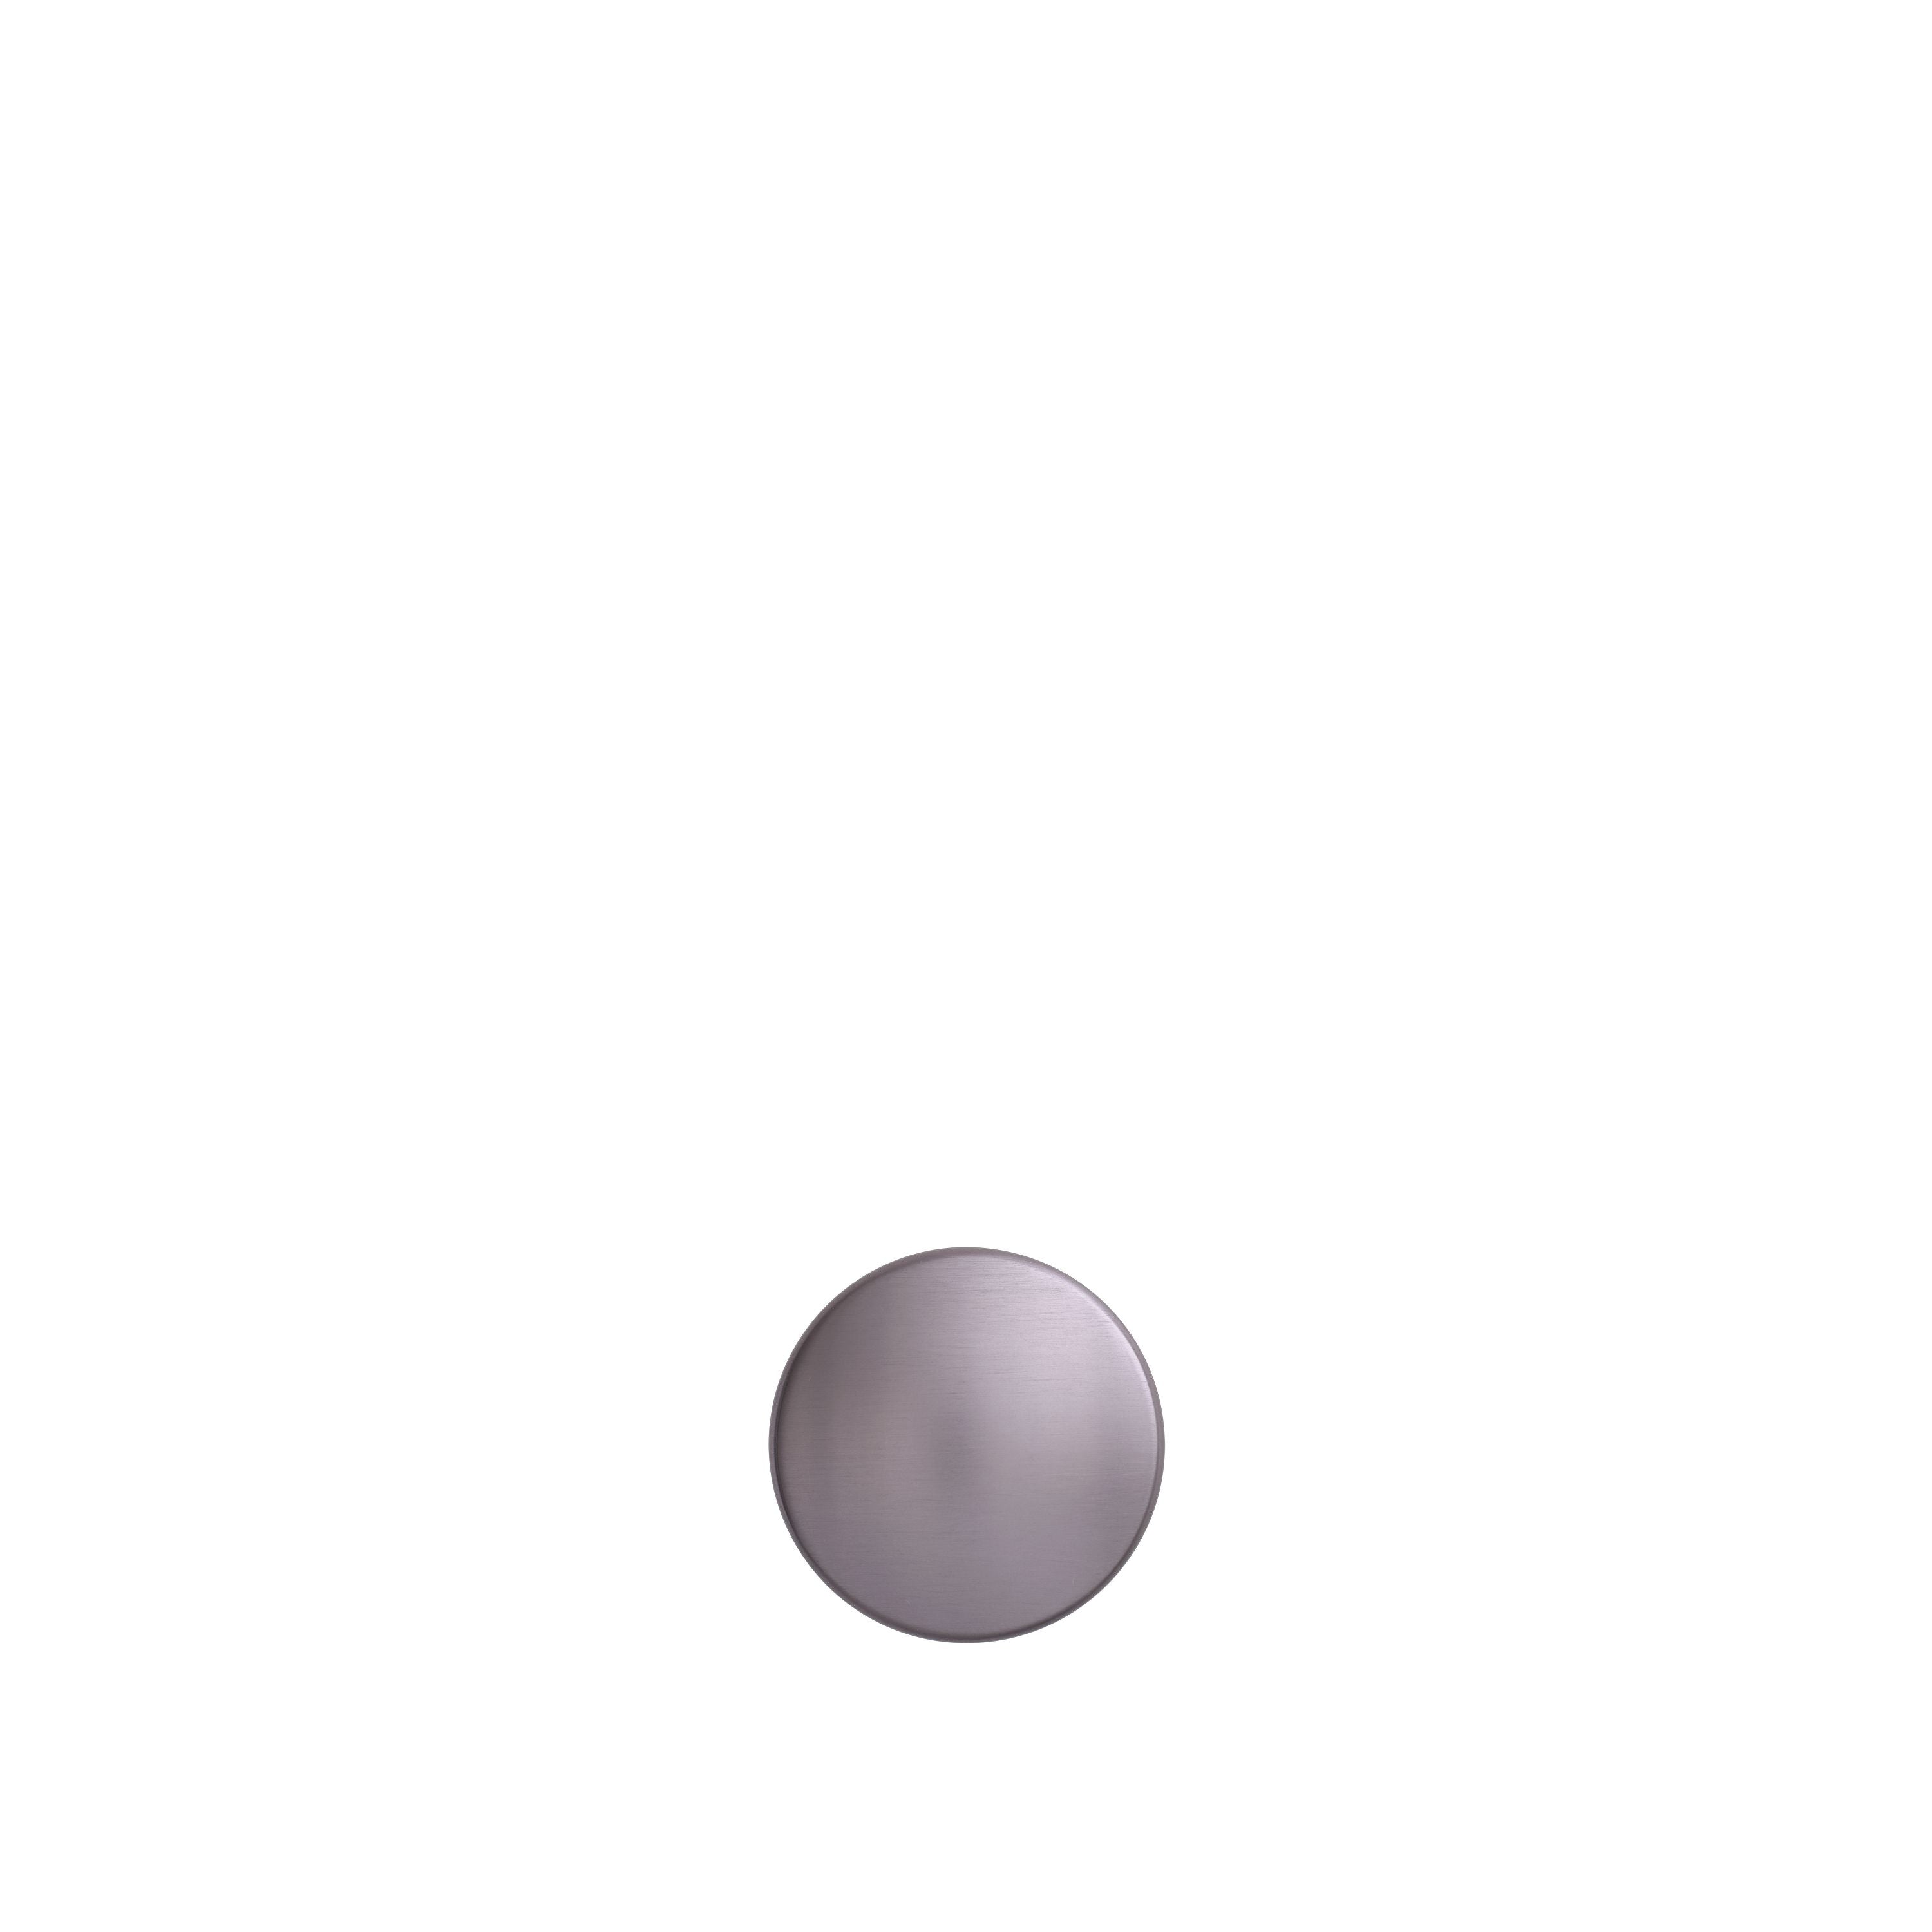 Muuto punti in metallo lilla, Ø 3,9 cm